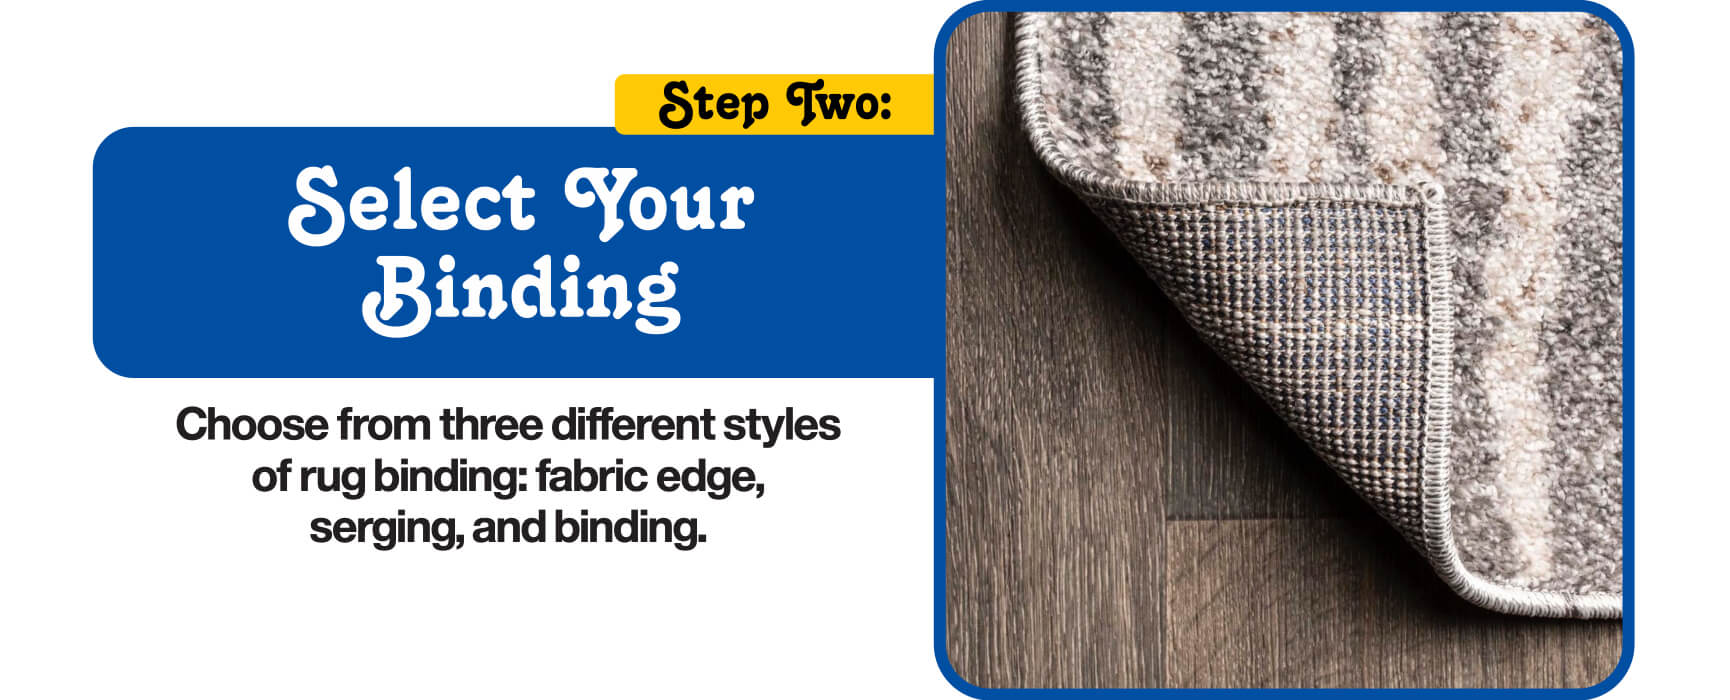 Select Your Bindings